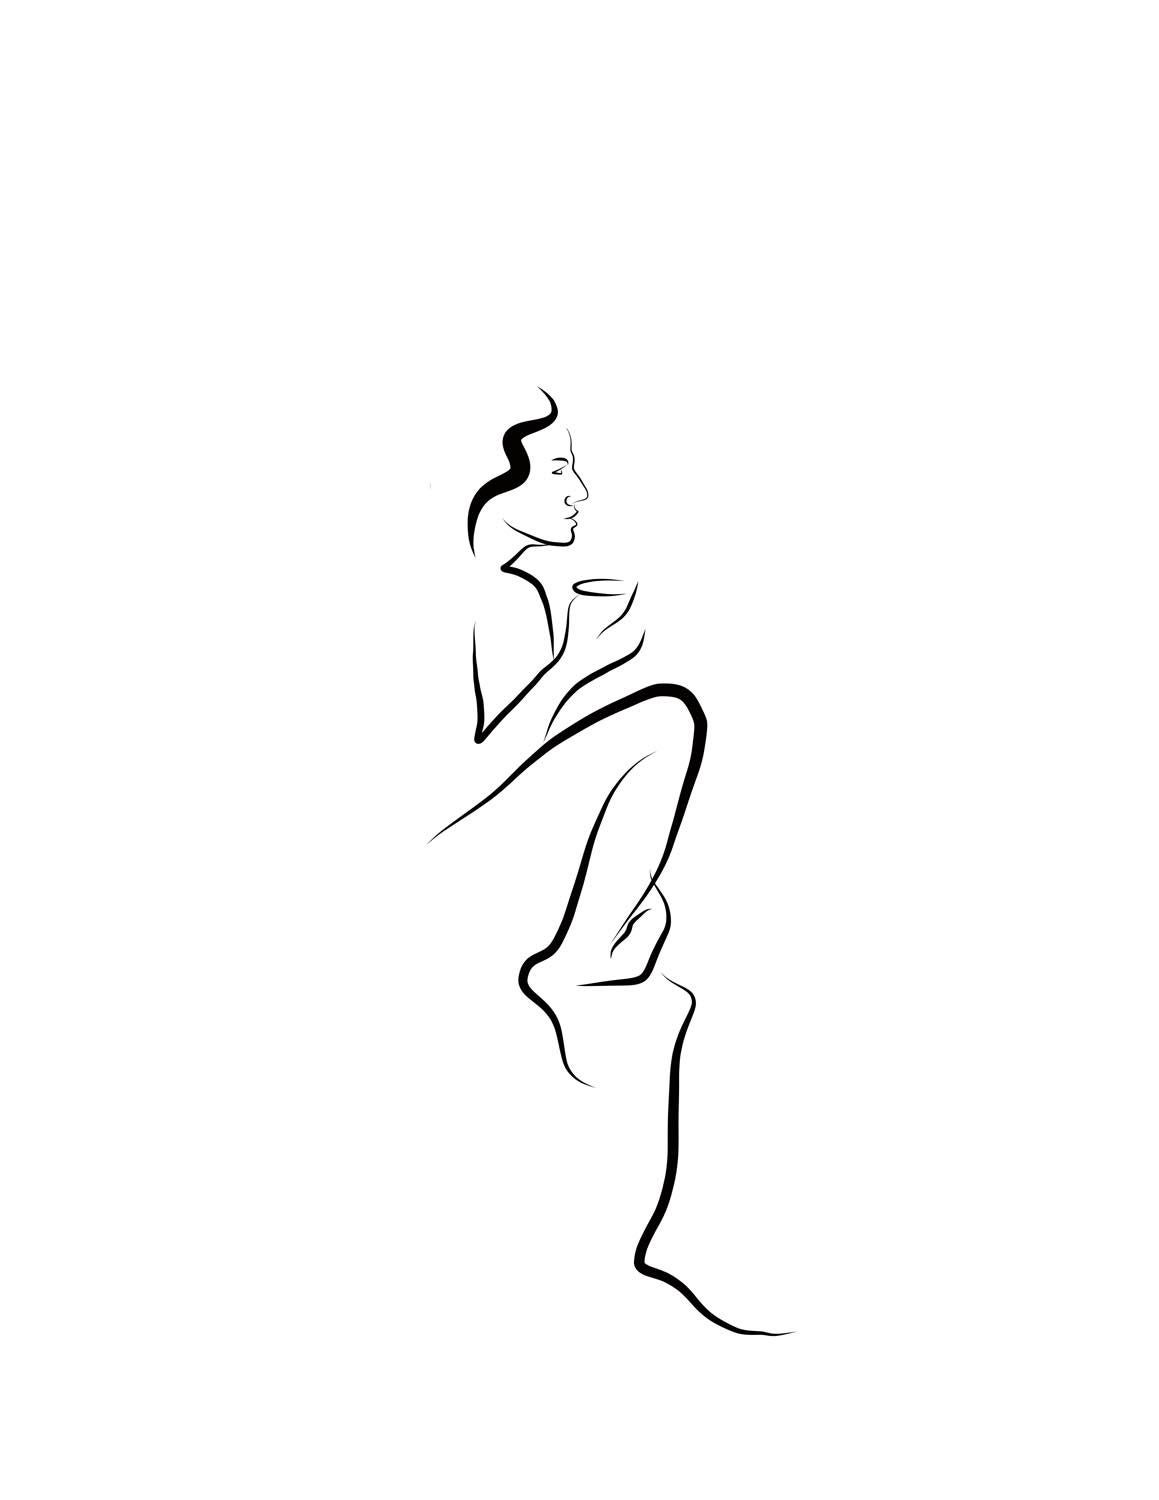 Nude Print Michael Binkley - Haiku n°51, 1/50 - Dessin numérique représentant une femme nue assise sur une table basse